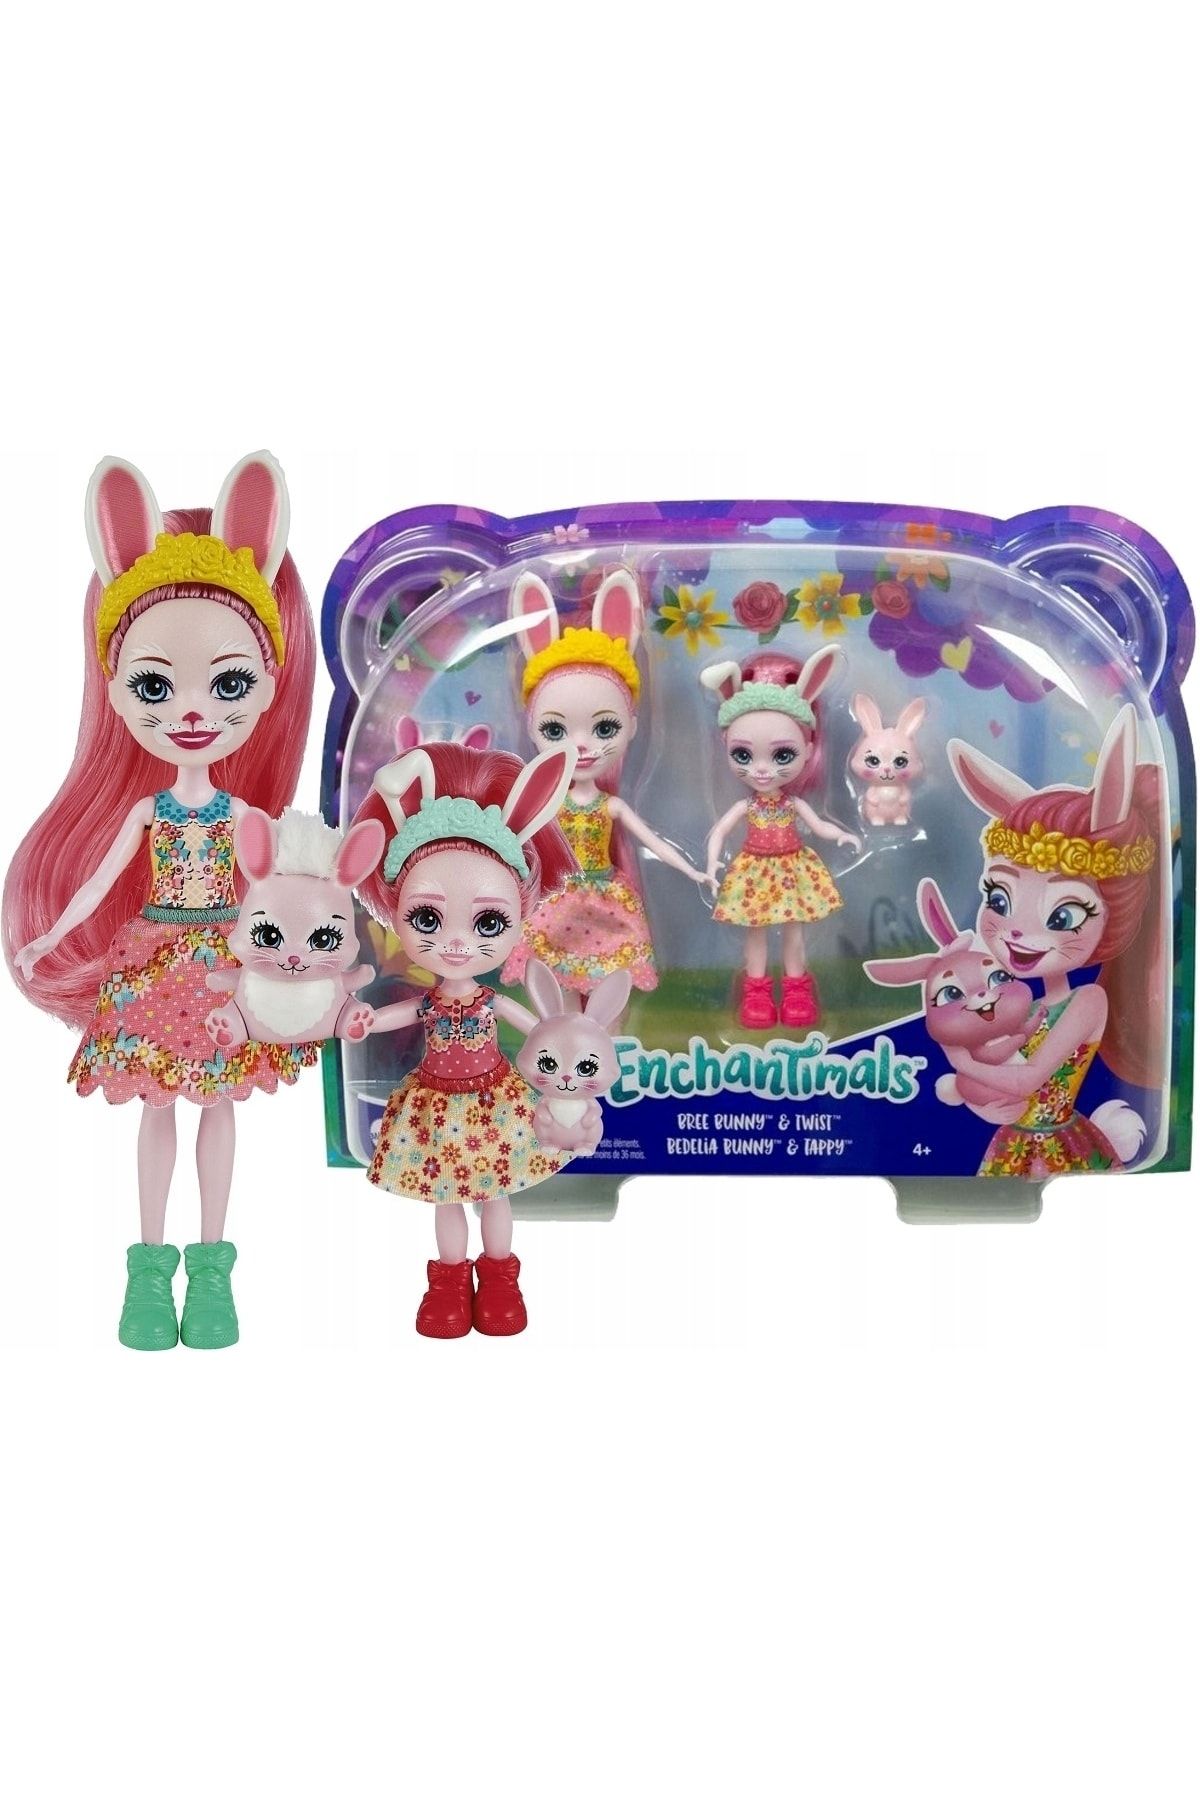 Enchantimals Kız Kardeşler Bree Bunny & Twist - Bedelia Bunny & Tappy Oyuncak